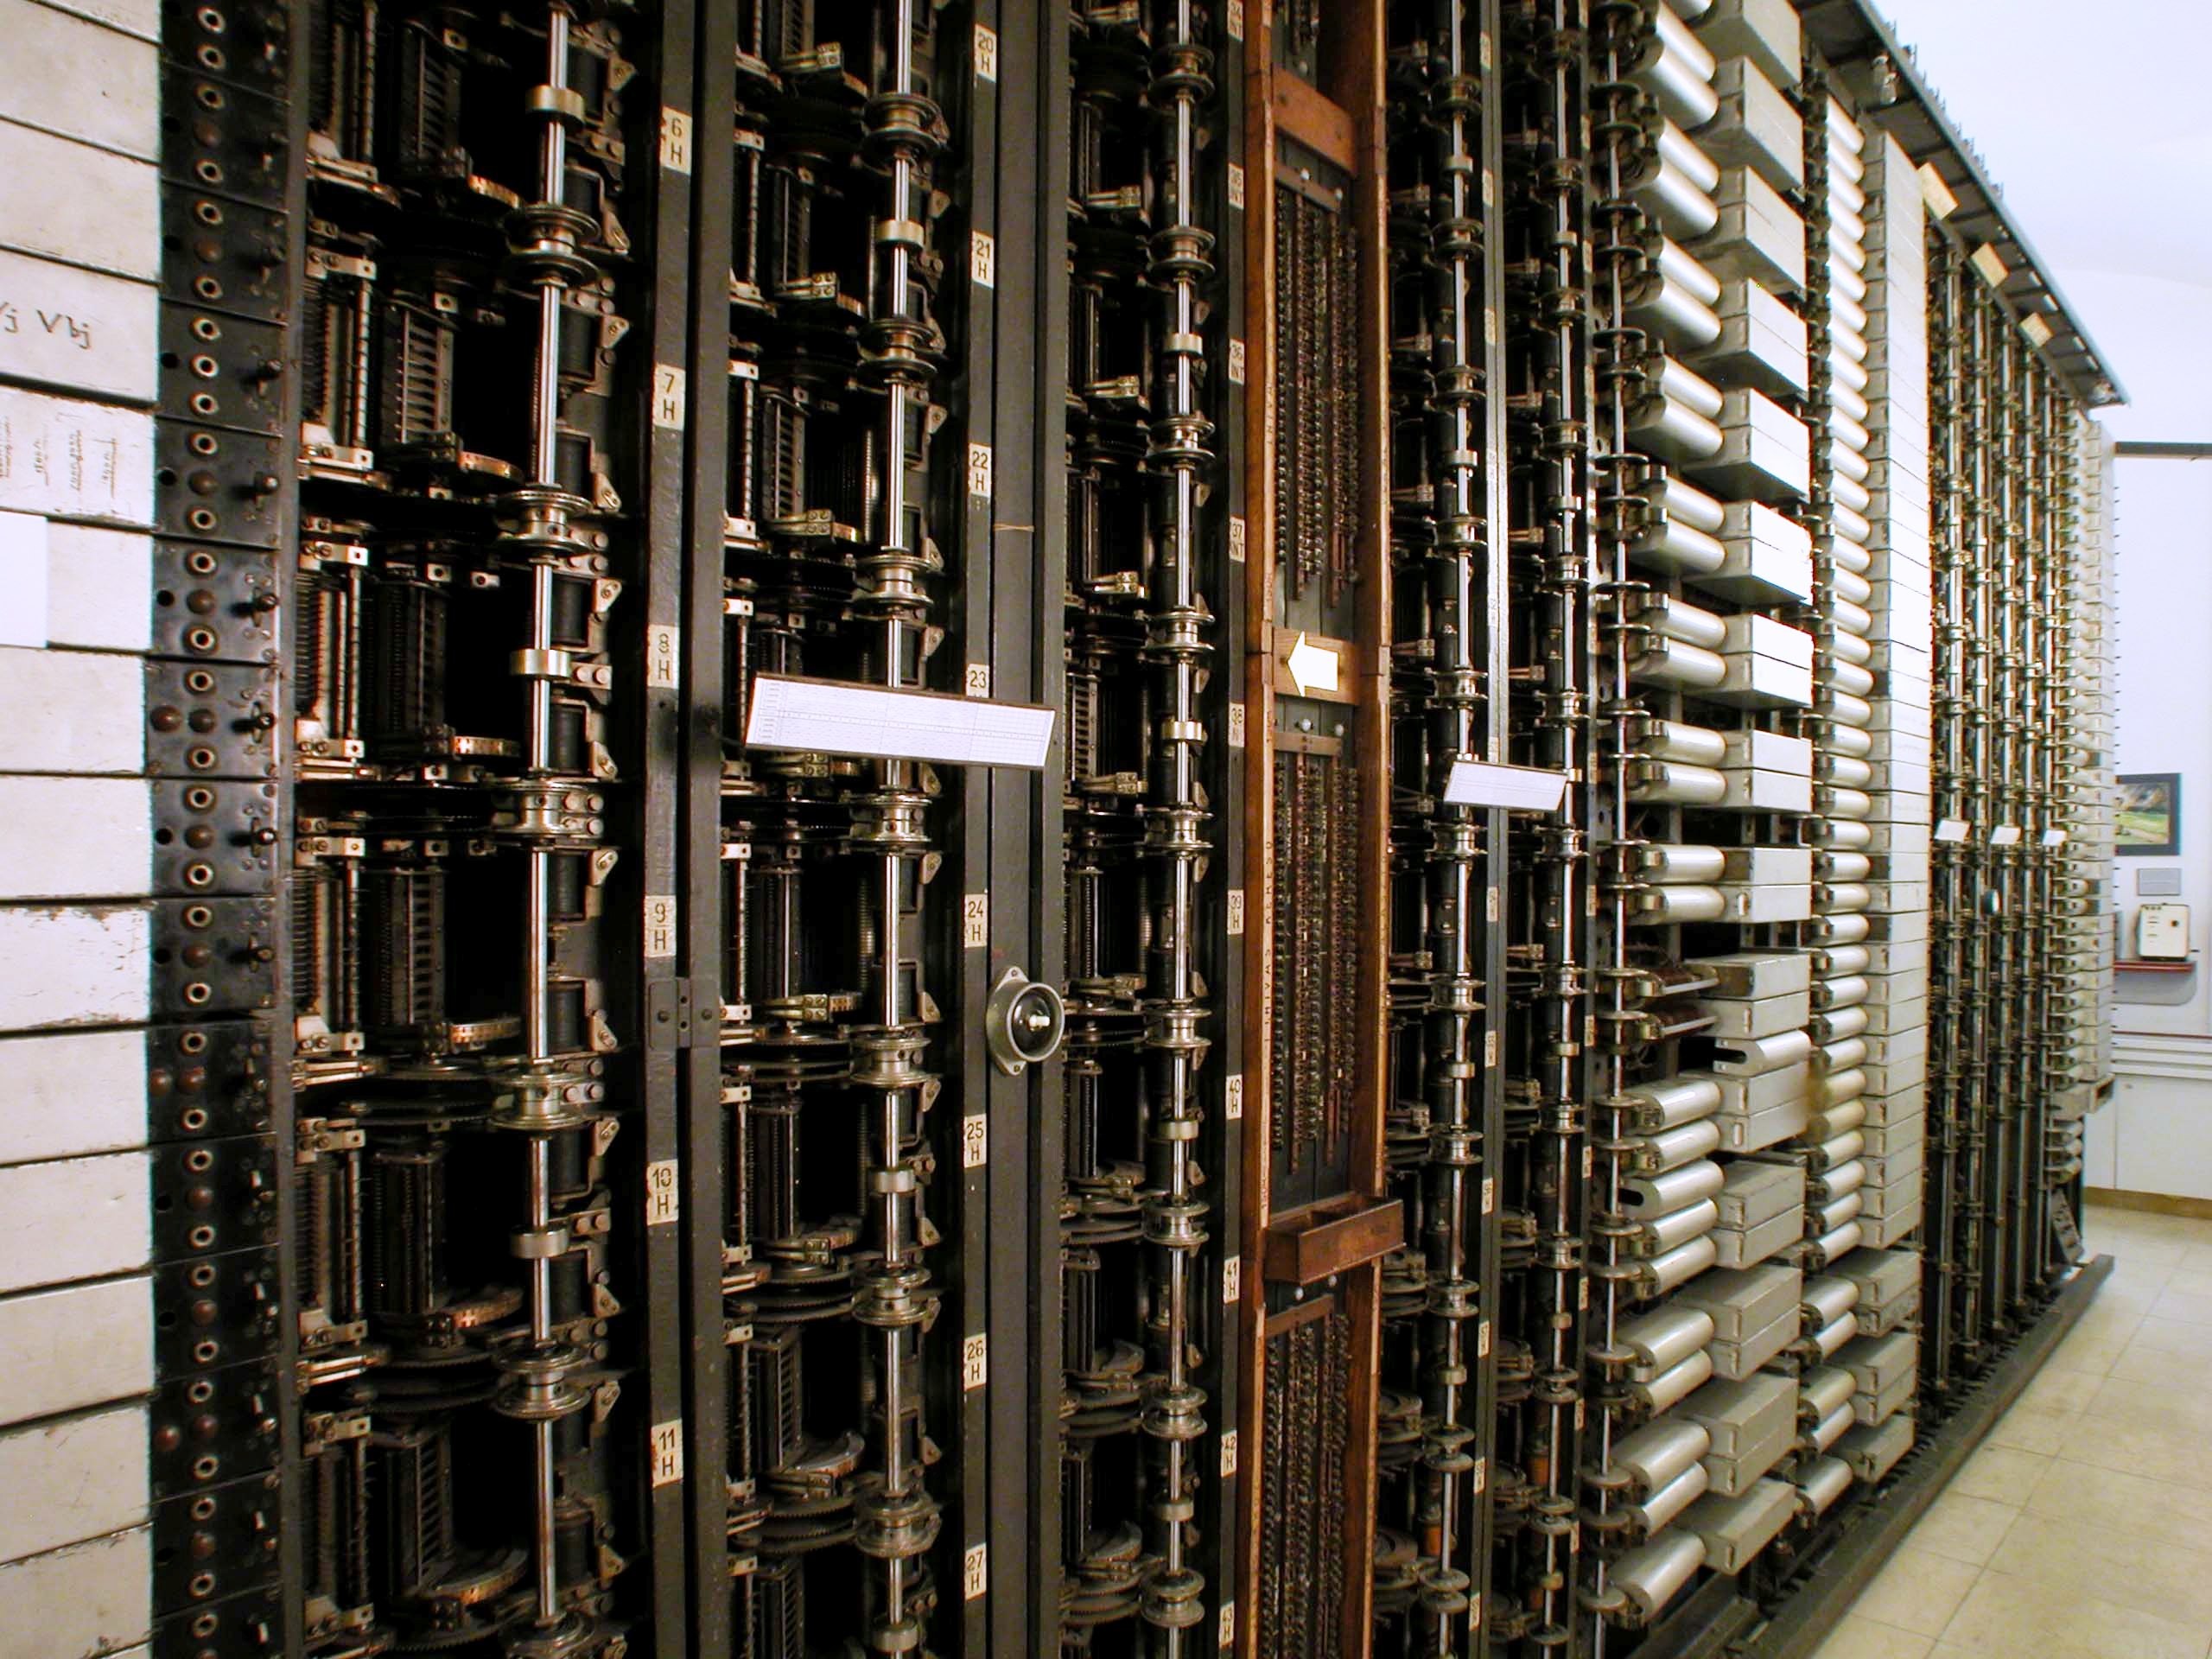 7A1-típusú forgógépes (rotary) távbeszélő központ keretsora (Postamúzeum CC BY-NC-SA)